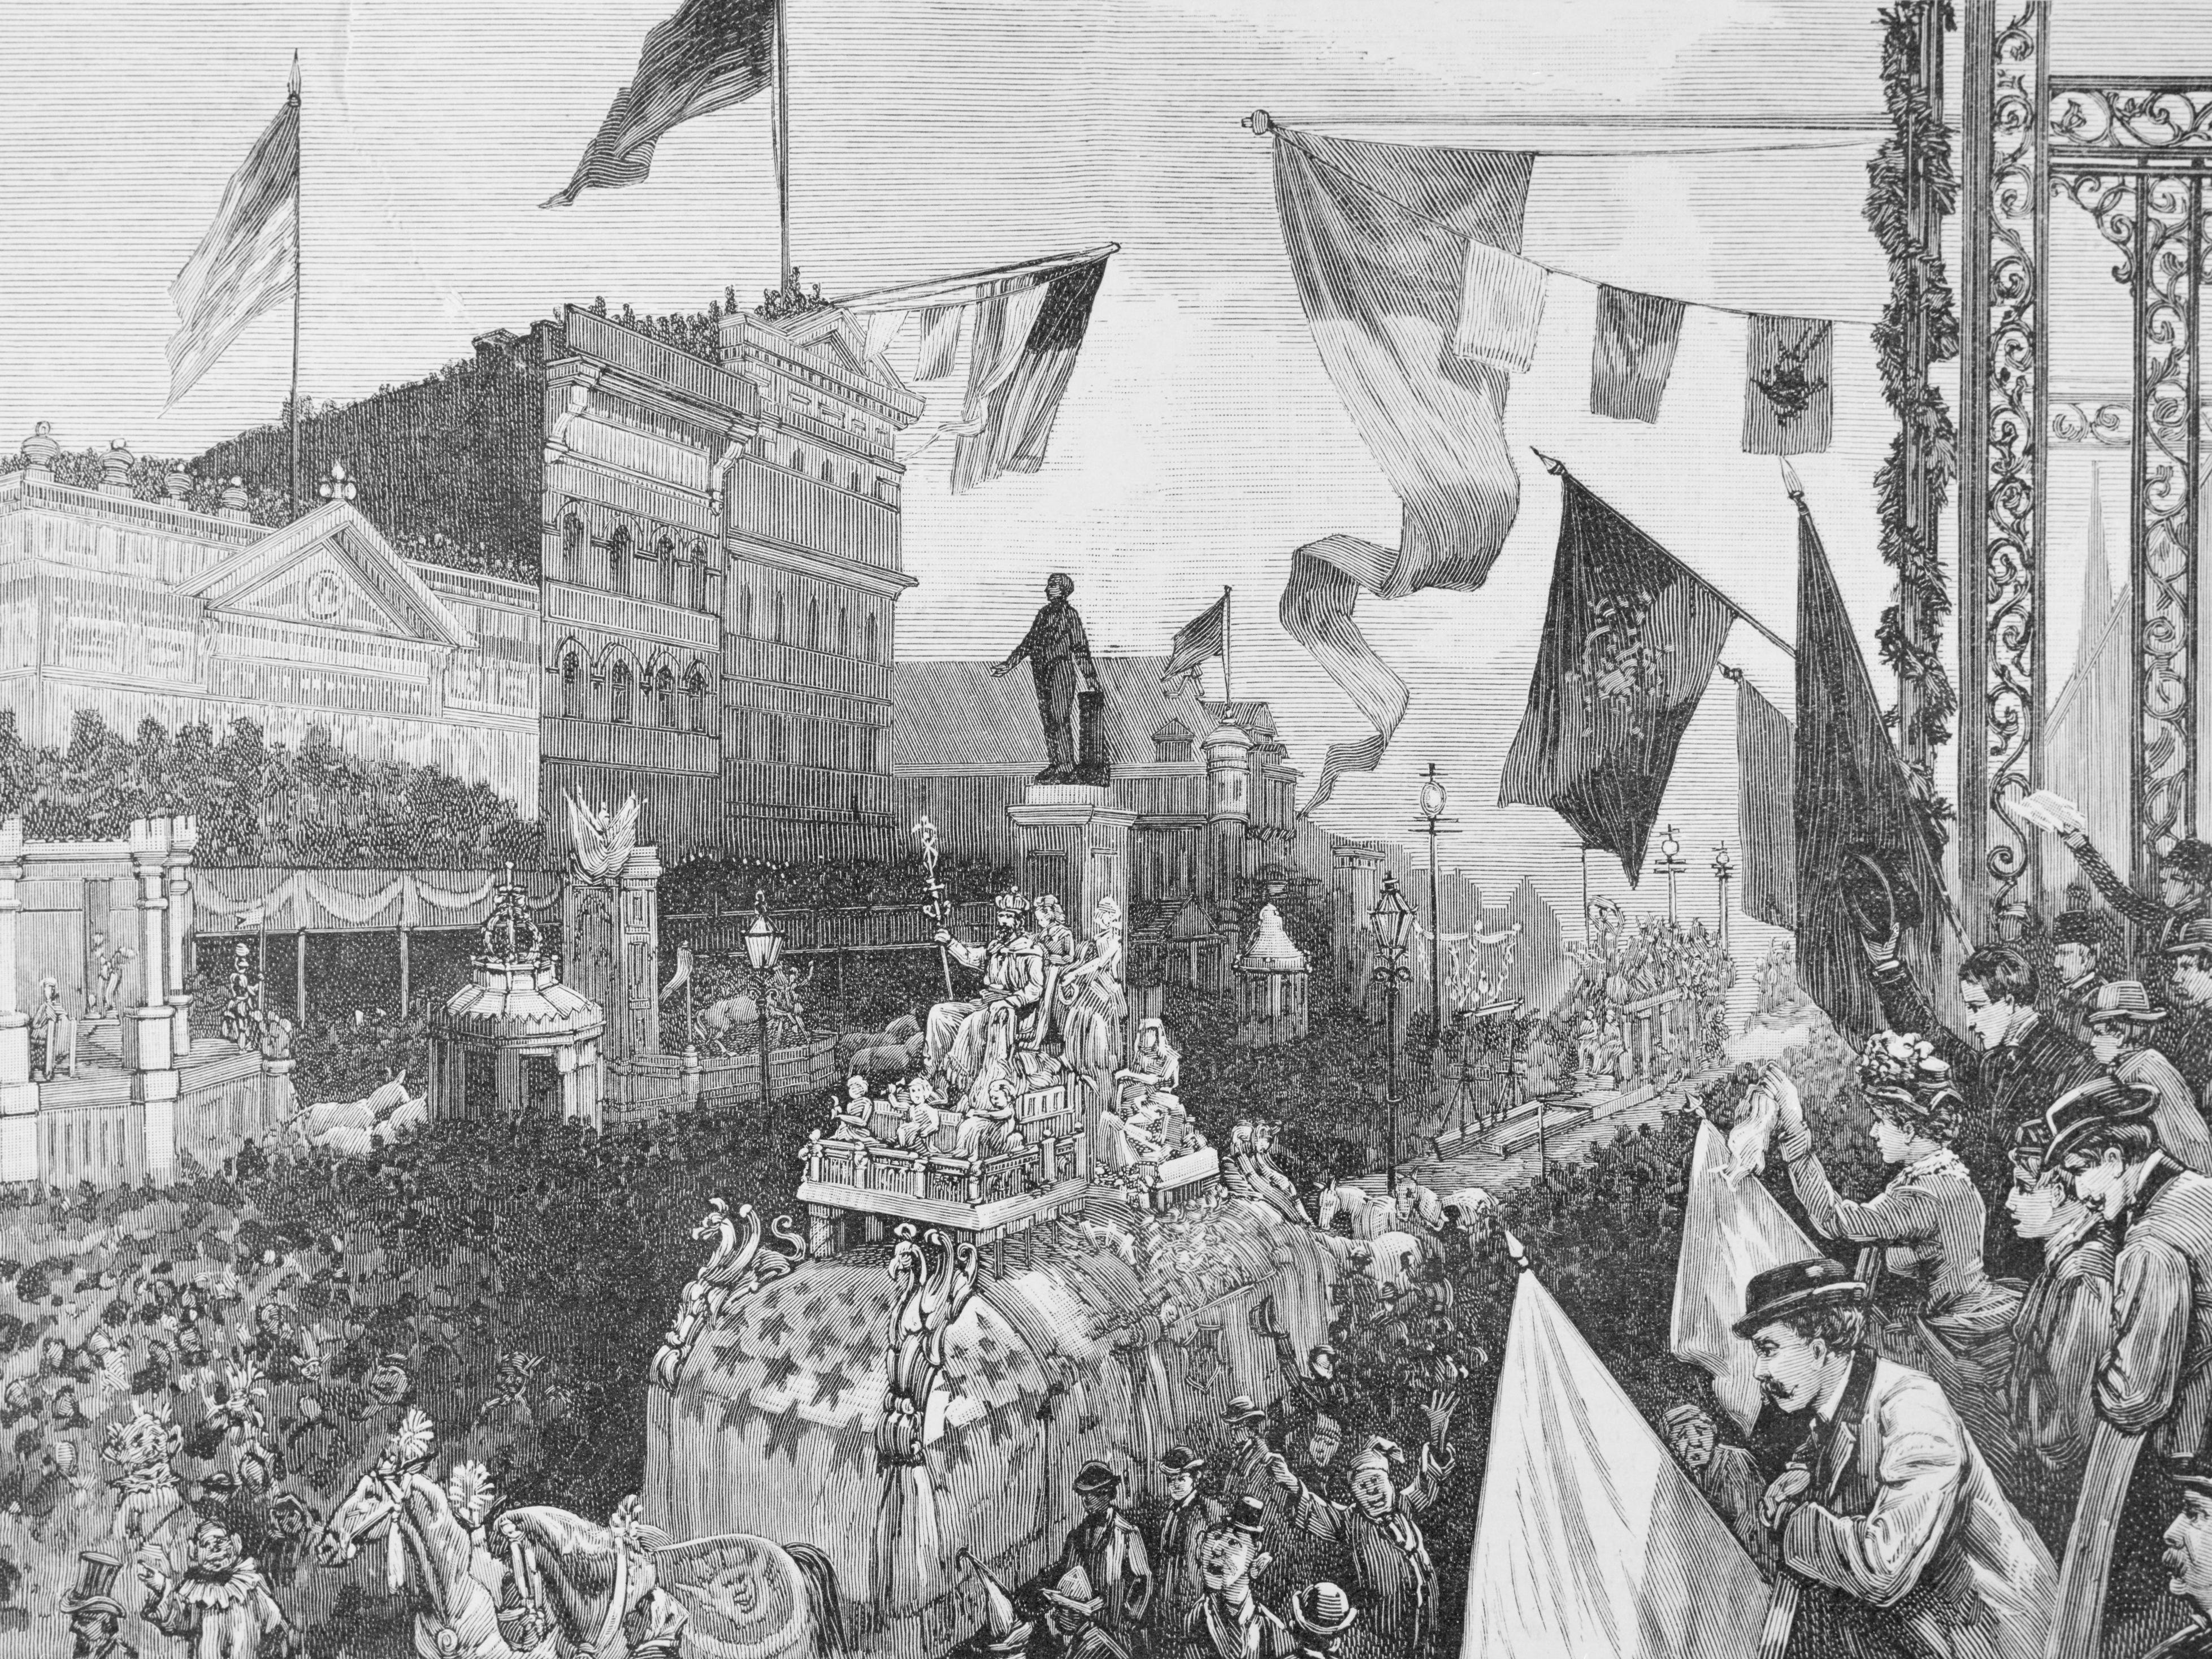 Der Karneval in New Orleans.  Die Zeichnung des berühmten Mardi Gras Festivals zeigt eine Parade voller Wagen und Kostüme, die vorbeiziehen.